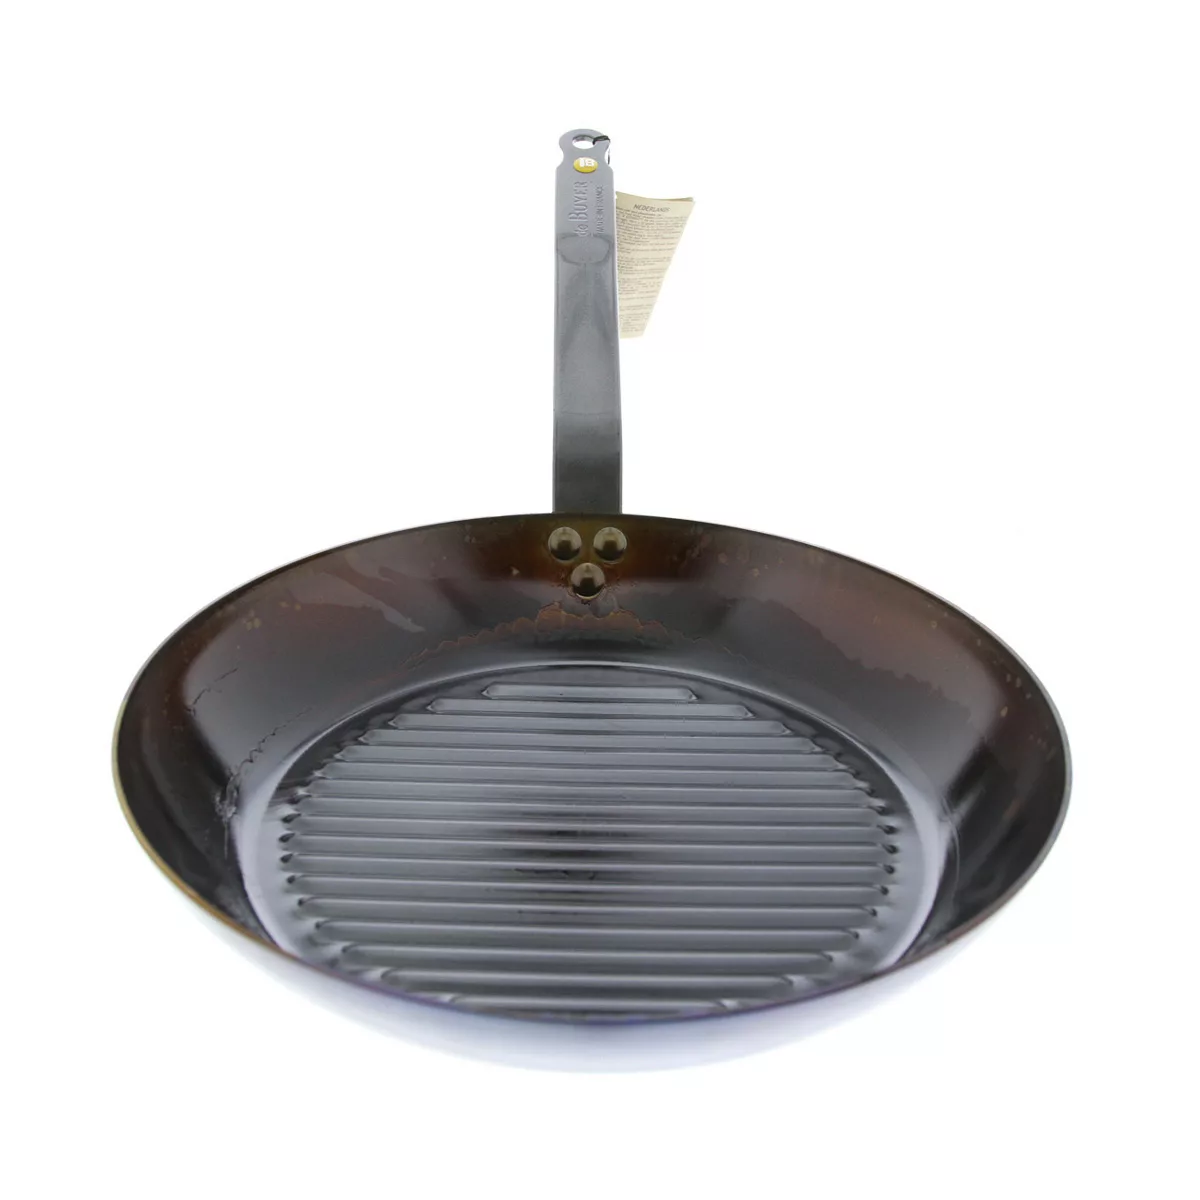 de Buyer Mineral B Grillpfanne 26 cm eingebrannt - Eisen mit Bandstahlgriff günstig online kaufen